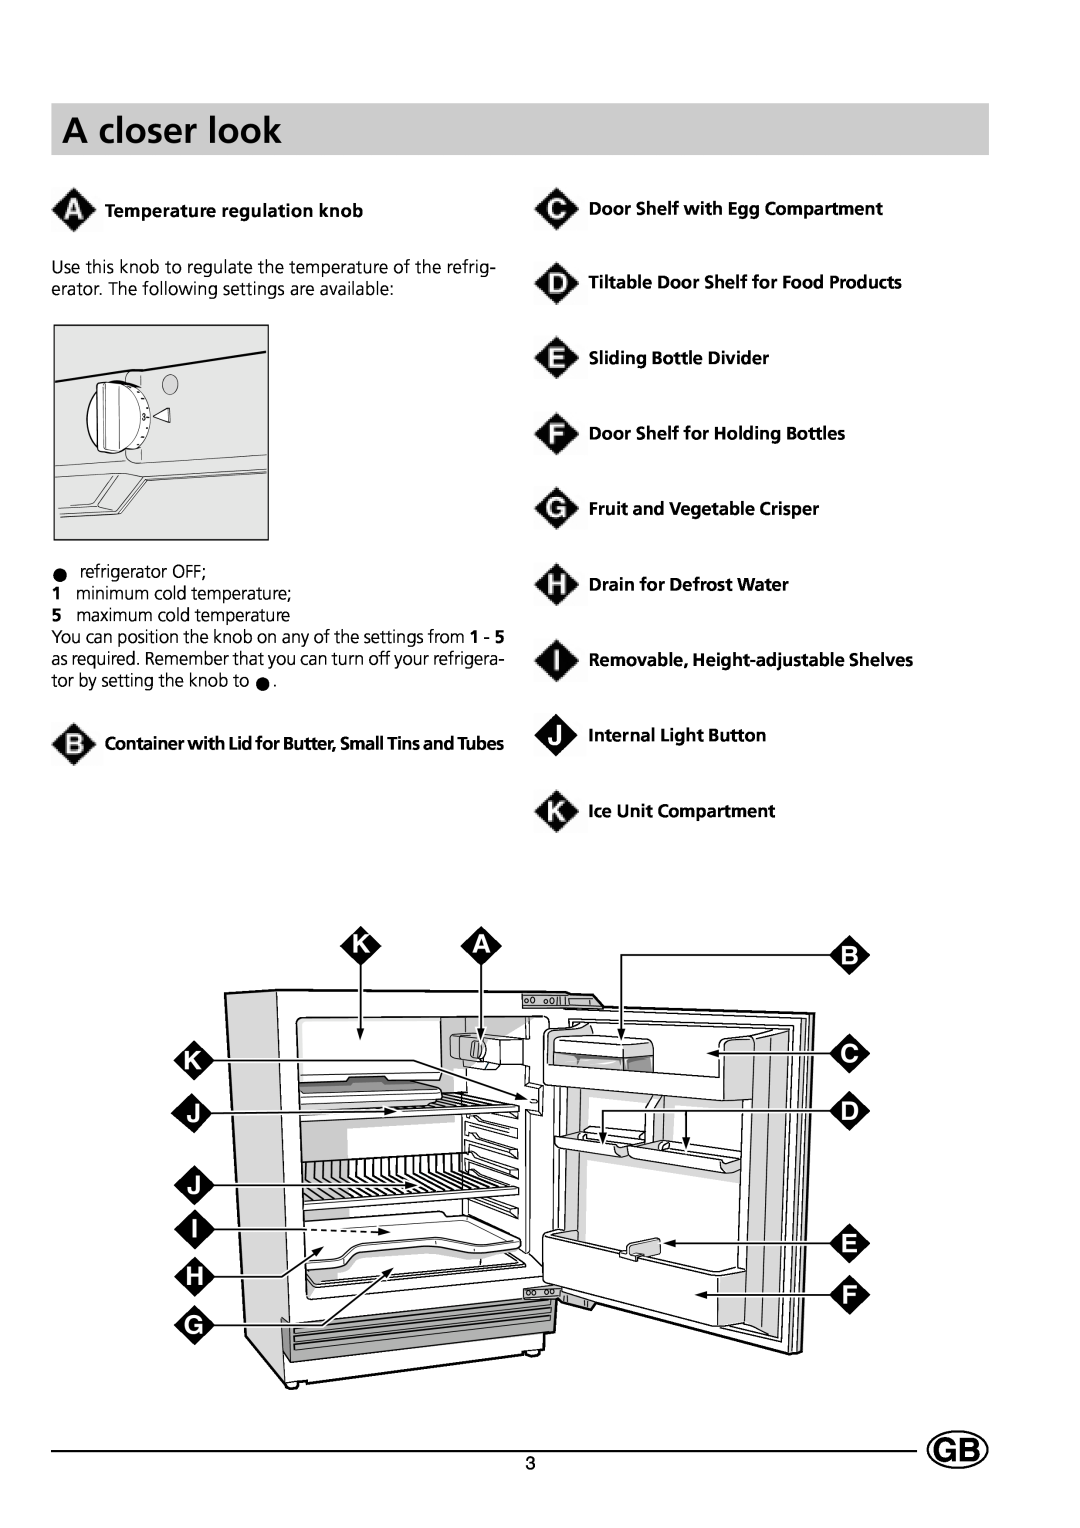 Indesit GSE 160 UK A closer look, K A K J J I H G, B C D E F, Temperature regulation knob, Door Shelf with Egg Compartment 